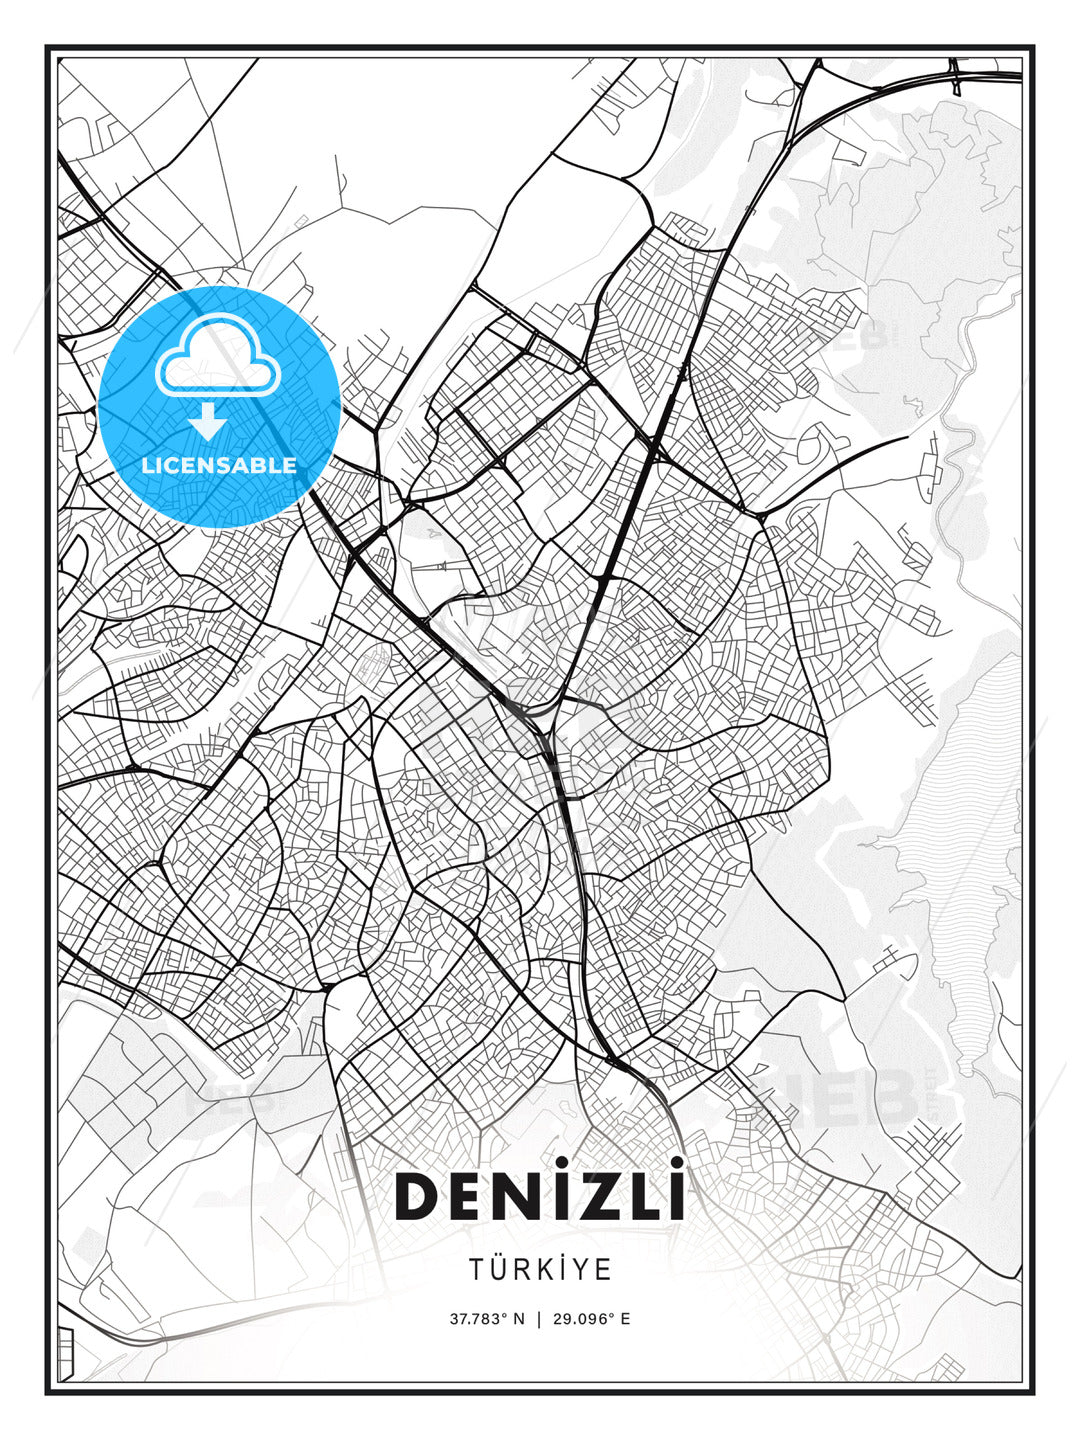 DENİZLİ / Denizli, Turkey, Modern Print Template in Various Formats - HEBSTREITS Sketches